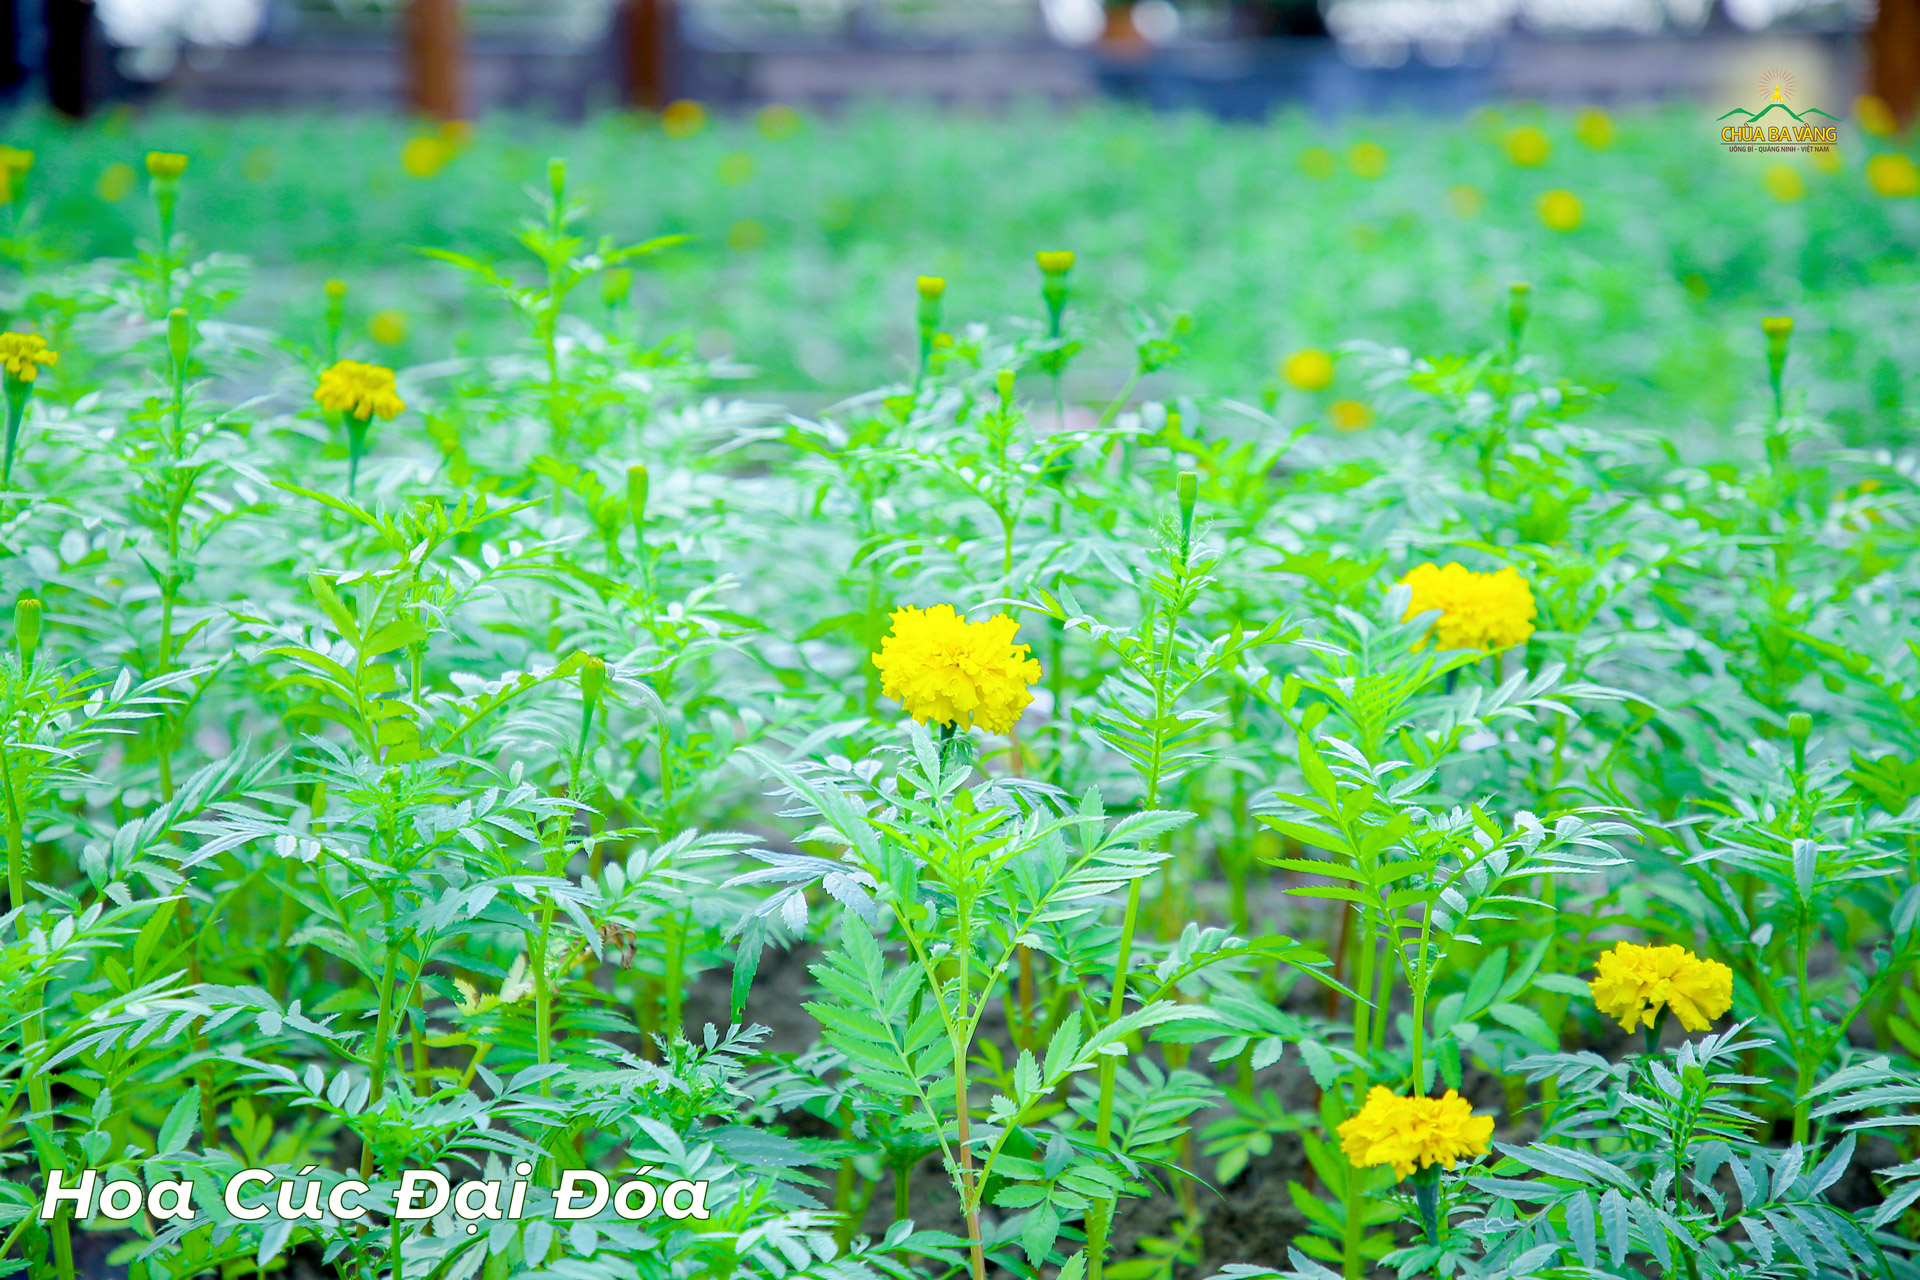 Những bông cúc đại đóa vàng tươi nổi bật trên nền xanh mướt của cây cỏ